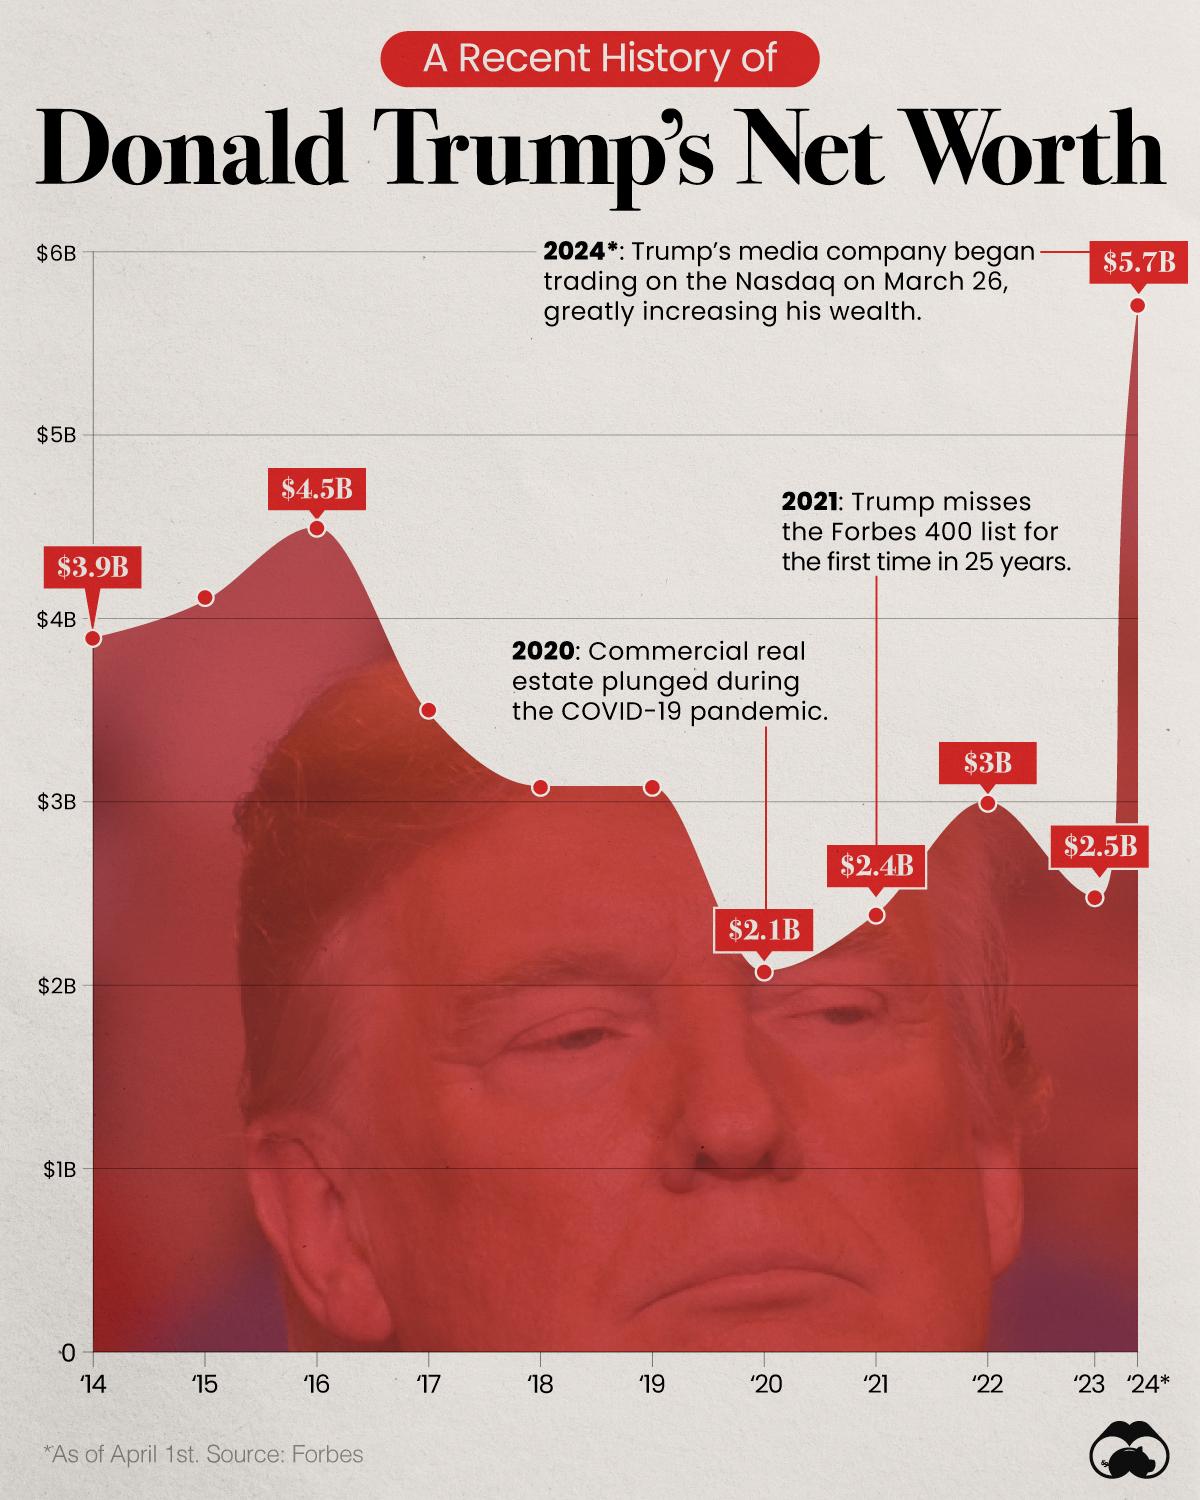 Trump’s Net Worth Jumps After Nasdaq Listing